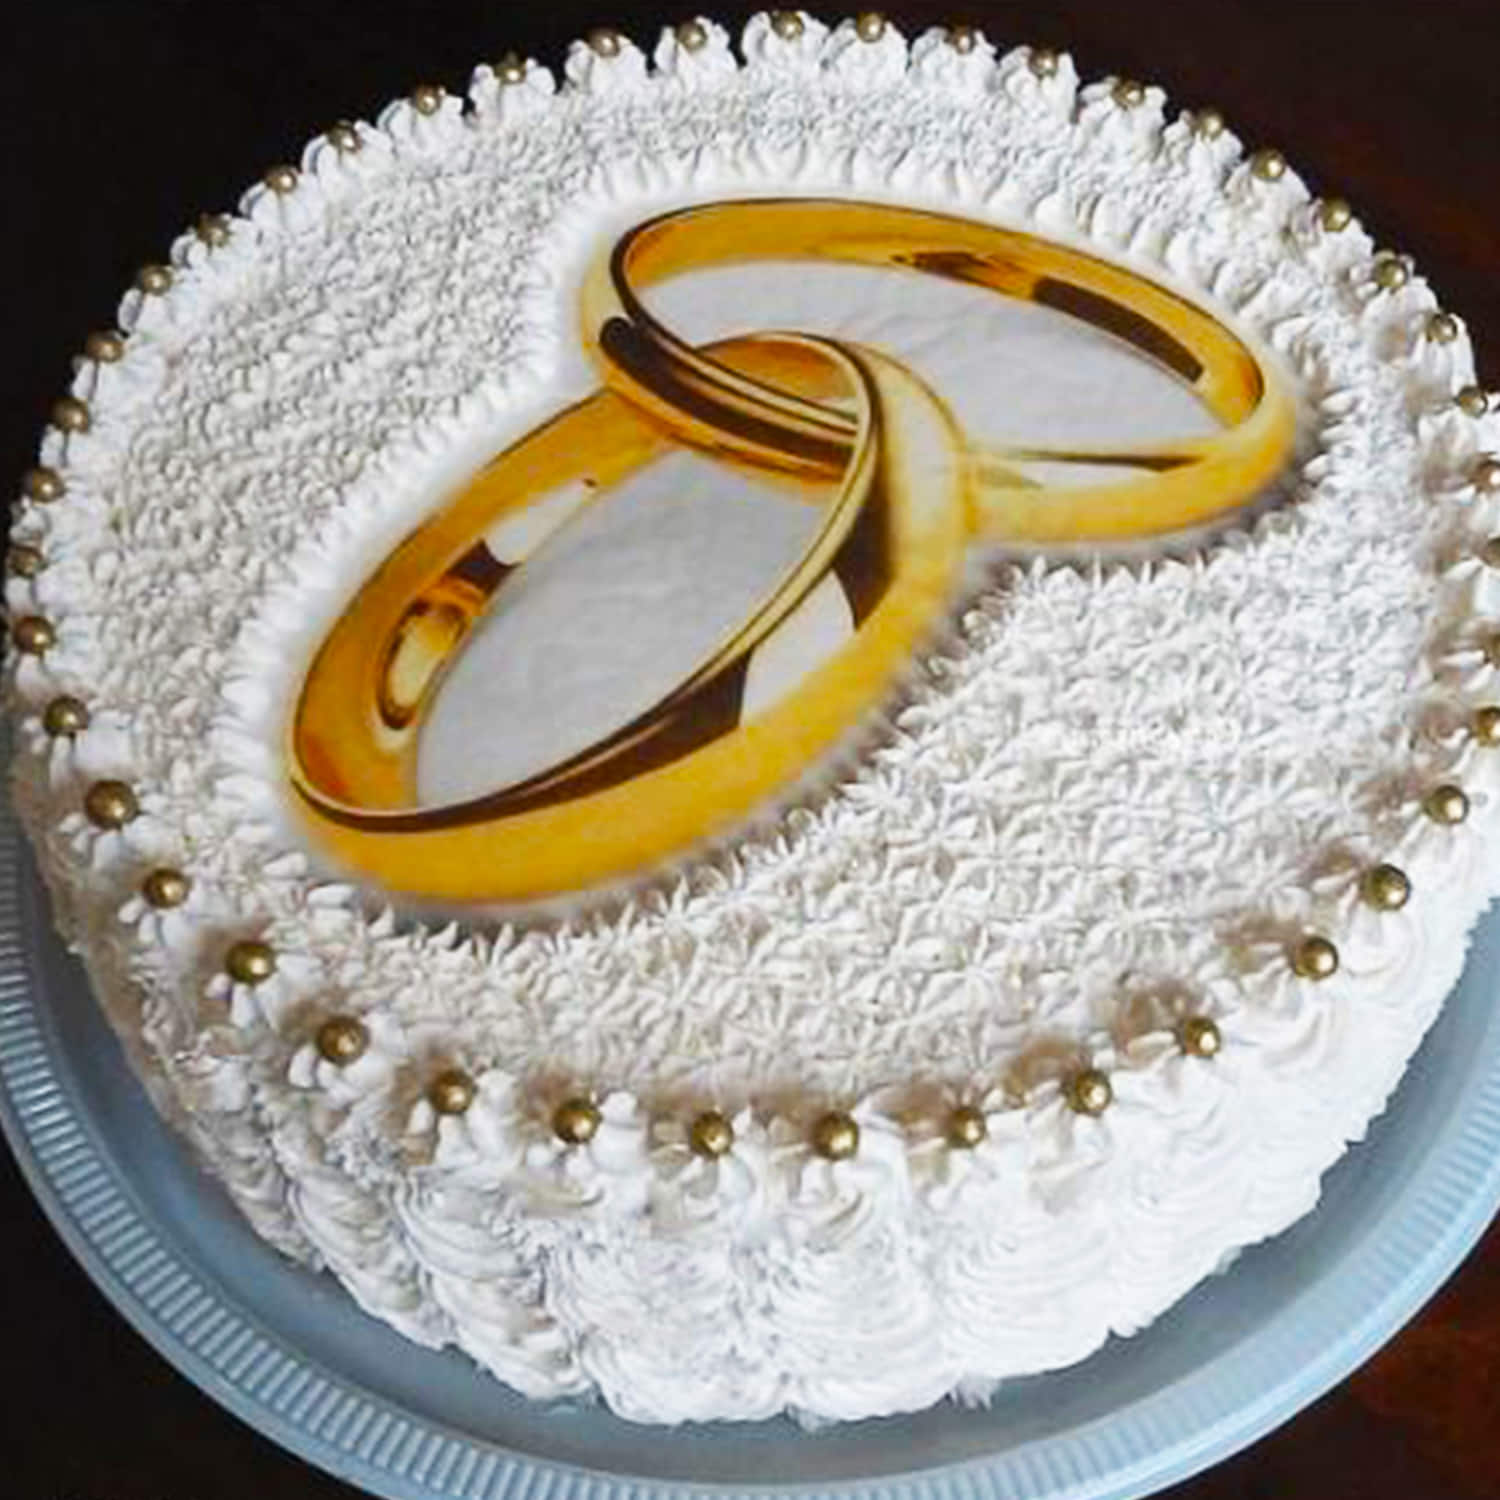 Ring Engagement Bridal Shower Engaged Cake Topper,engaged Ring Cake Topper,bridal  Shower Miss to Mrs Engaged Ring Cake Topper,0194 - Etsy